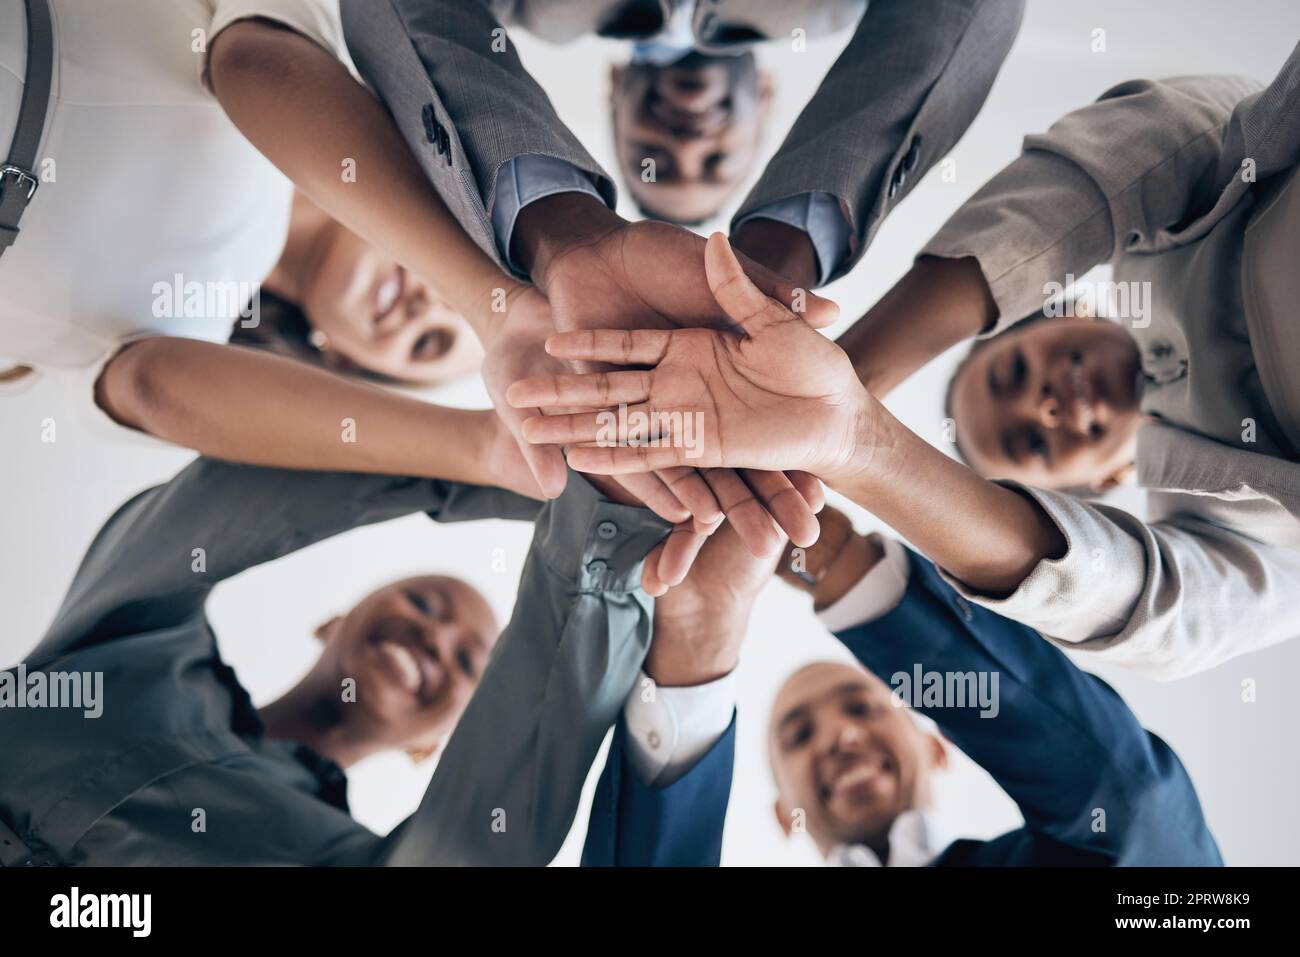 Arbeit, Motivation und Hände in Teamarbeit Unterstützung einer glücklichen Büroarbeitergruppe zusammen. Geschäftliche Zusammenarbeit, Gemeinschaft und Arbeitserfolg der Mitarbeiter des Unternehmens, die bereit sind, das Team-Projekt des Unternehmens zu starten Stockfoto